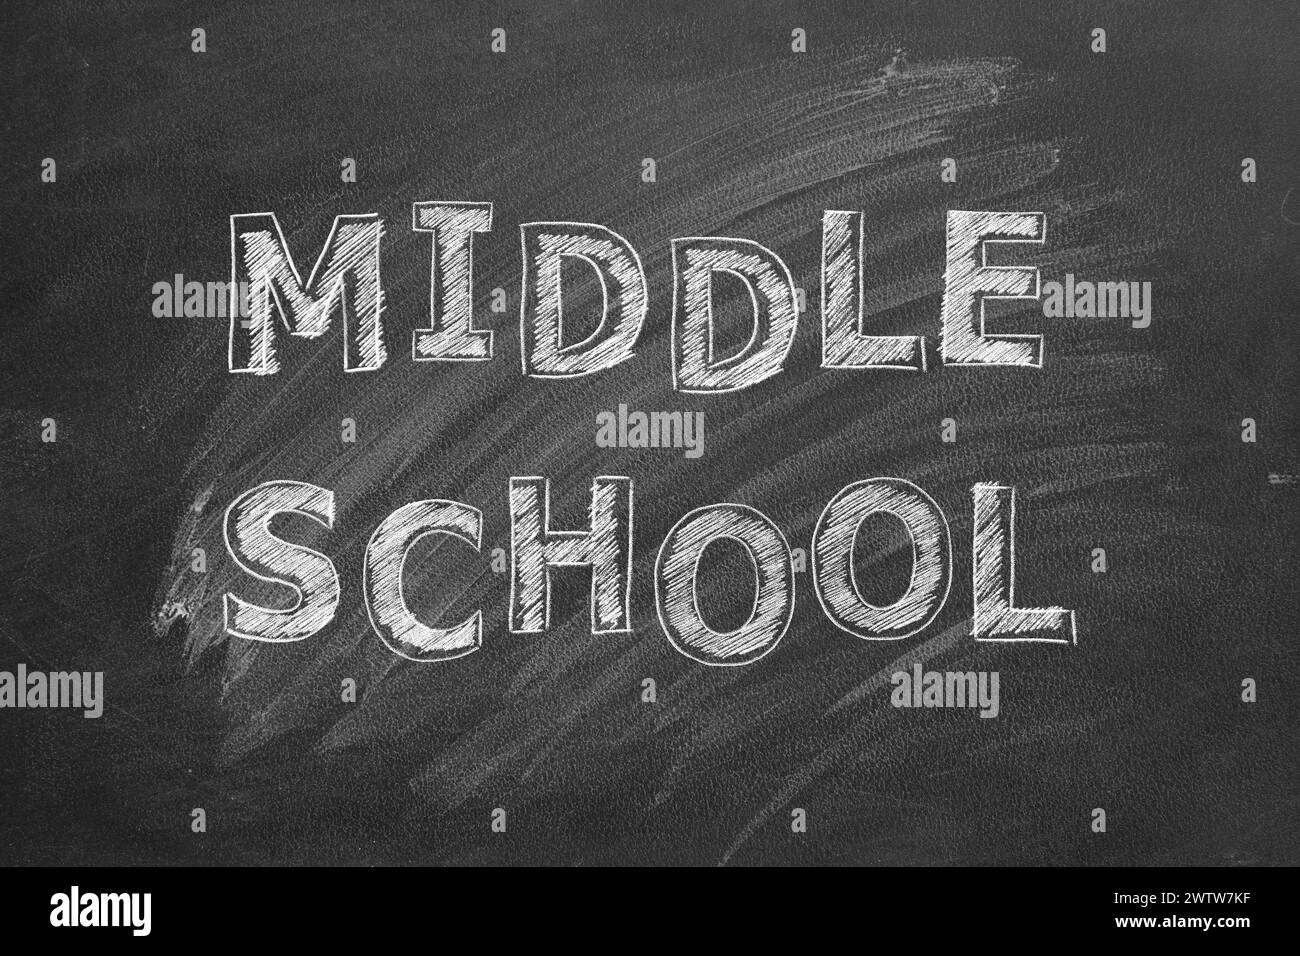 Lettering MIDDLE SCHOOL on black chalkboard. Stock Photo